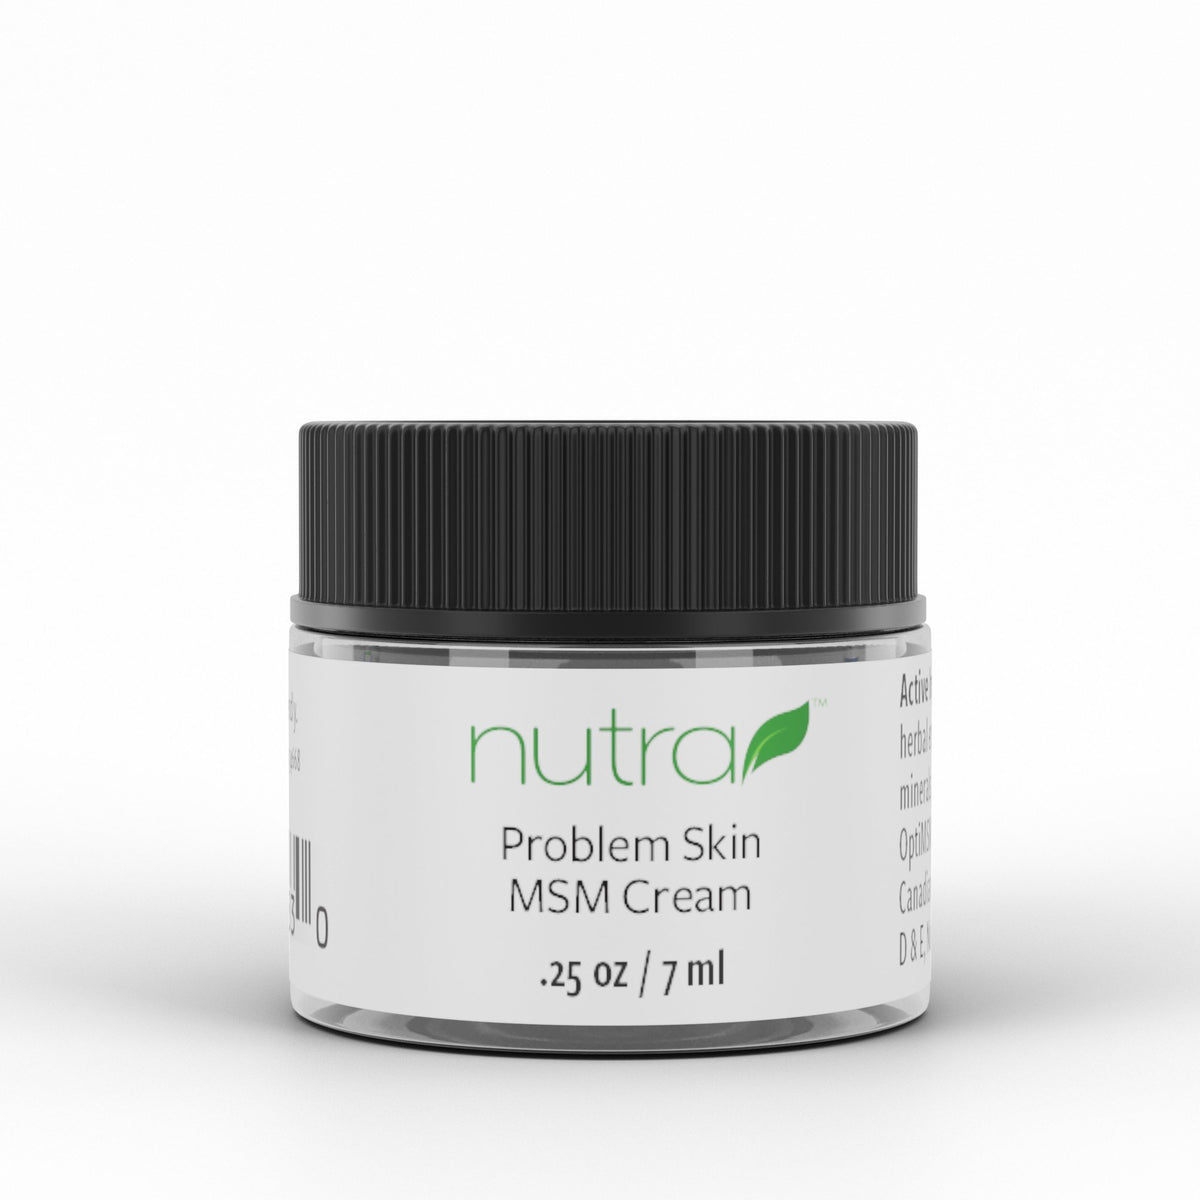 Nutra Health Problem Skin MSM Cream .25 oz Jar